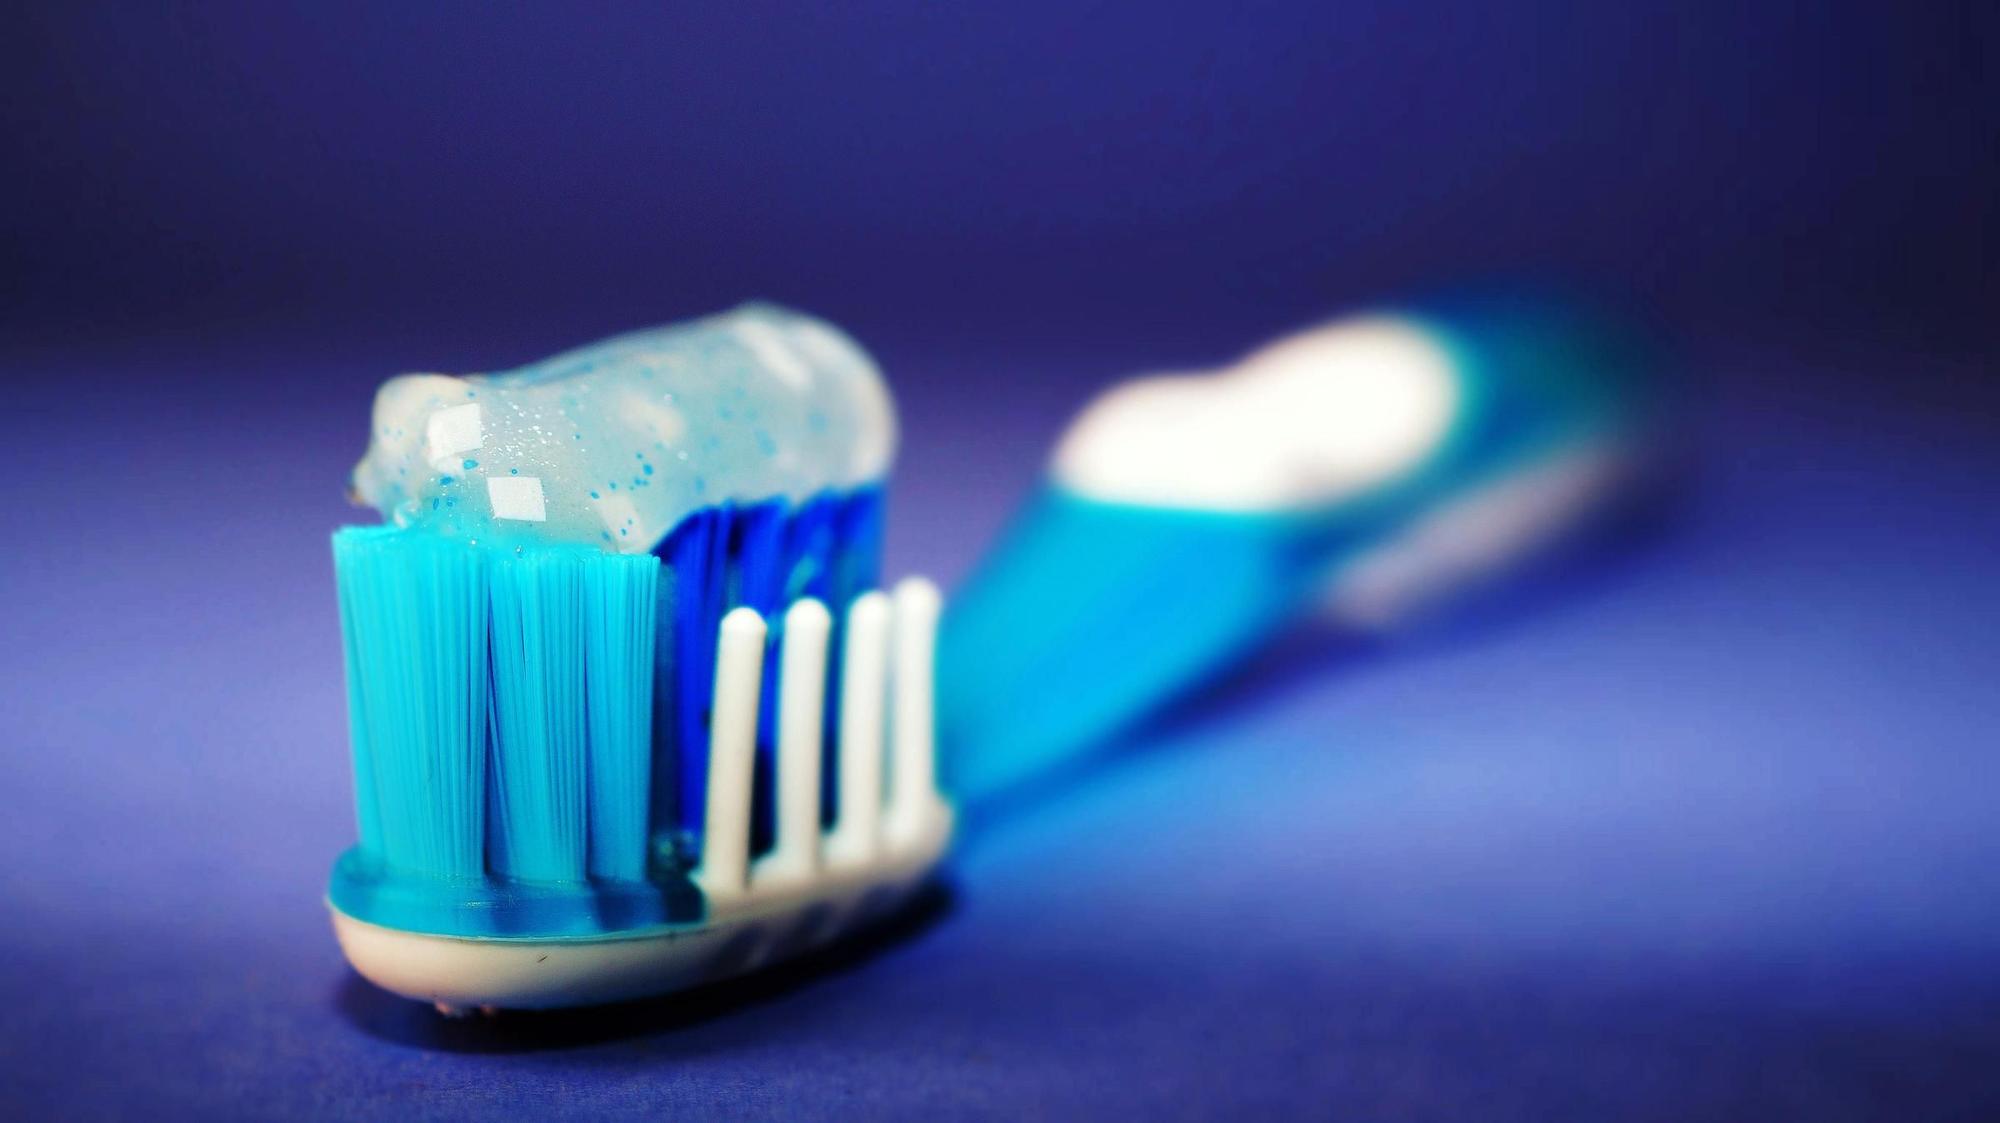 Cepillo dientes con su pasta, listo para usar... si hemos sabido cuidar las 6 reglas de higiene